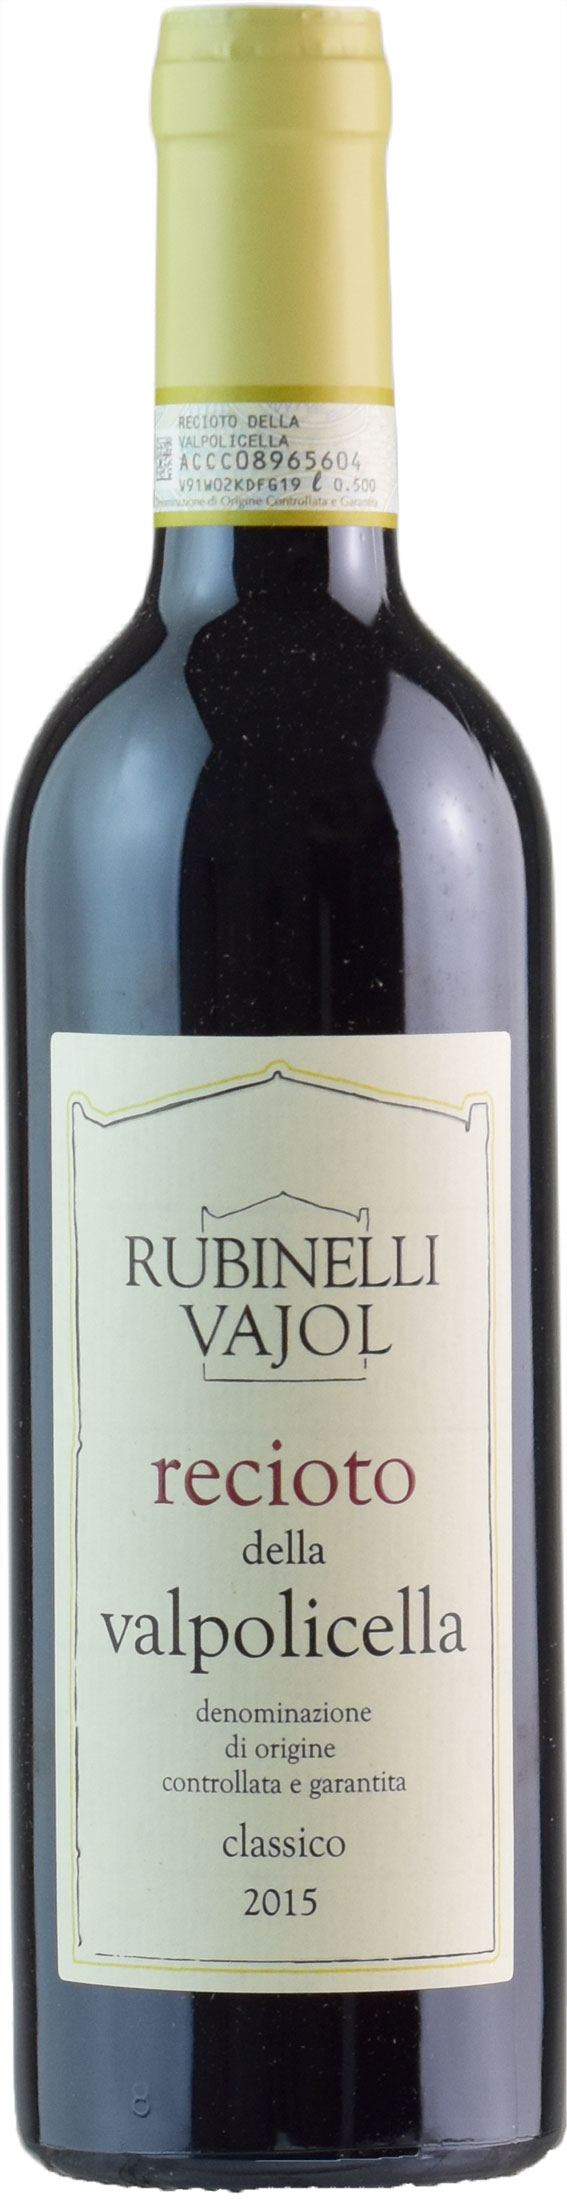 Rubinelli Vajol Rubinelli Recioto della Valpolicella 0.5L 2015